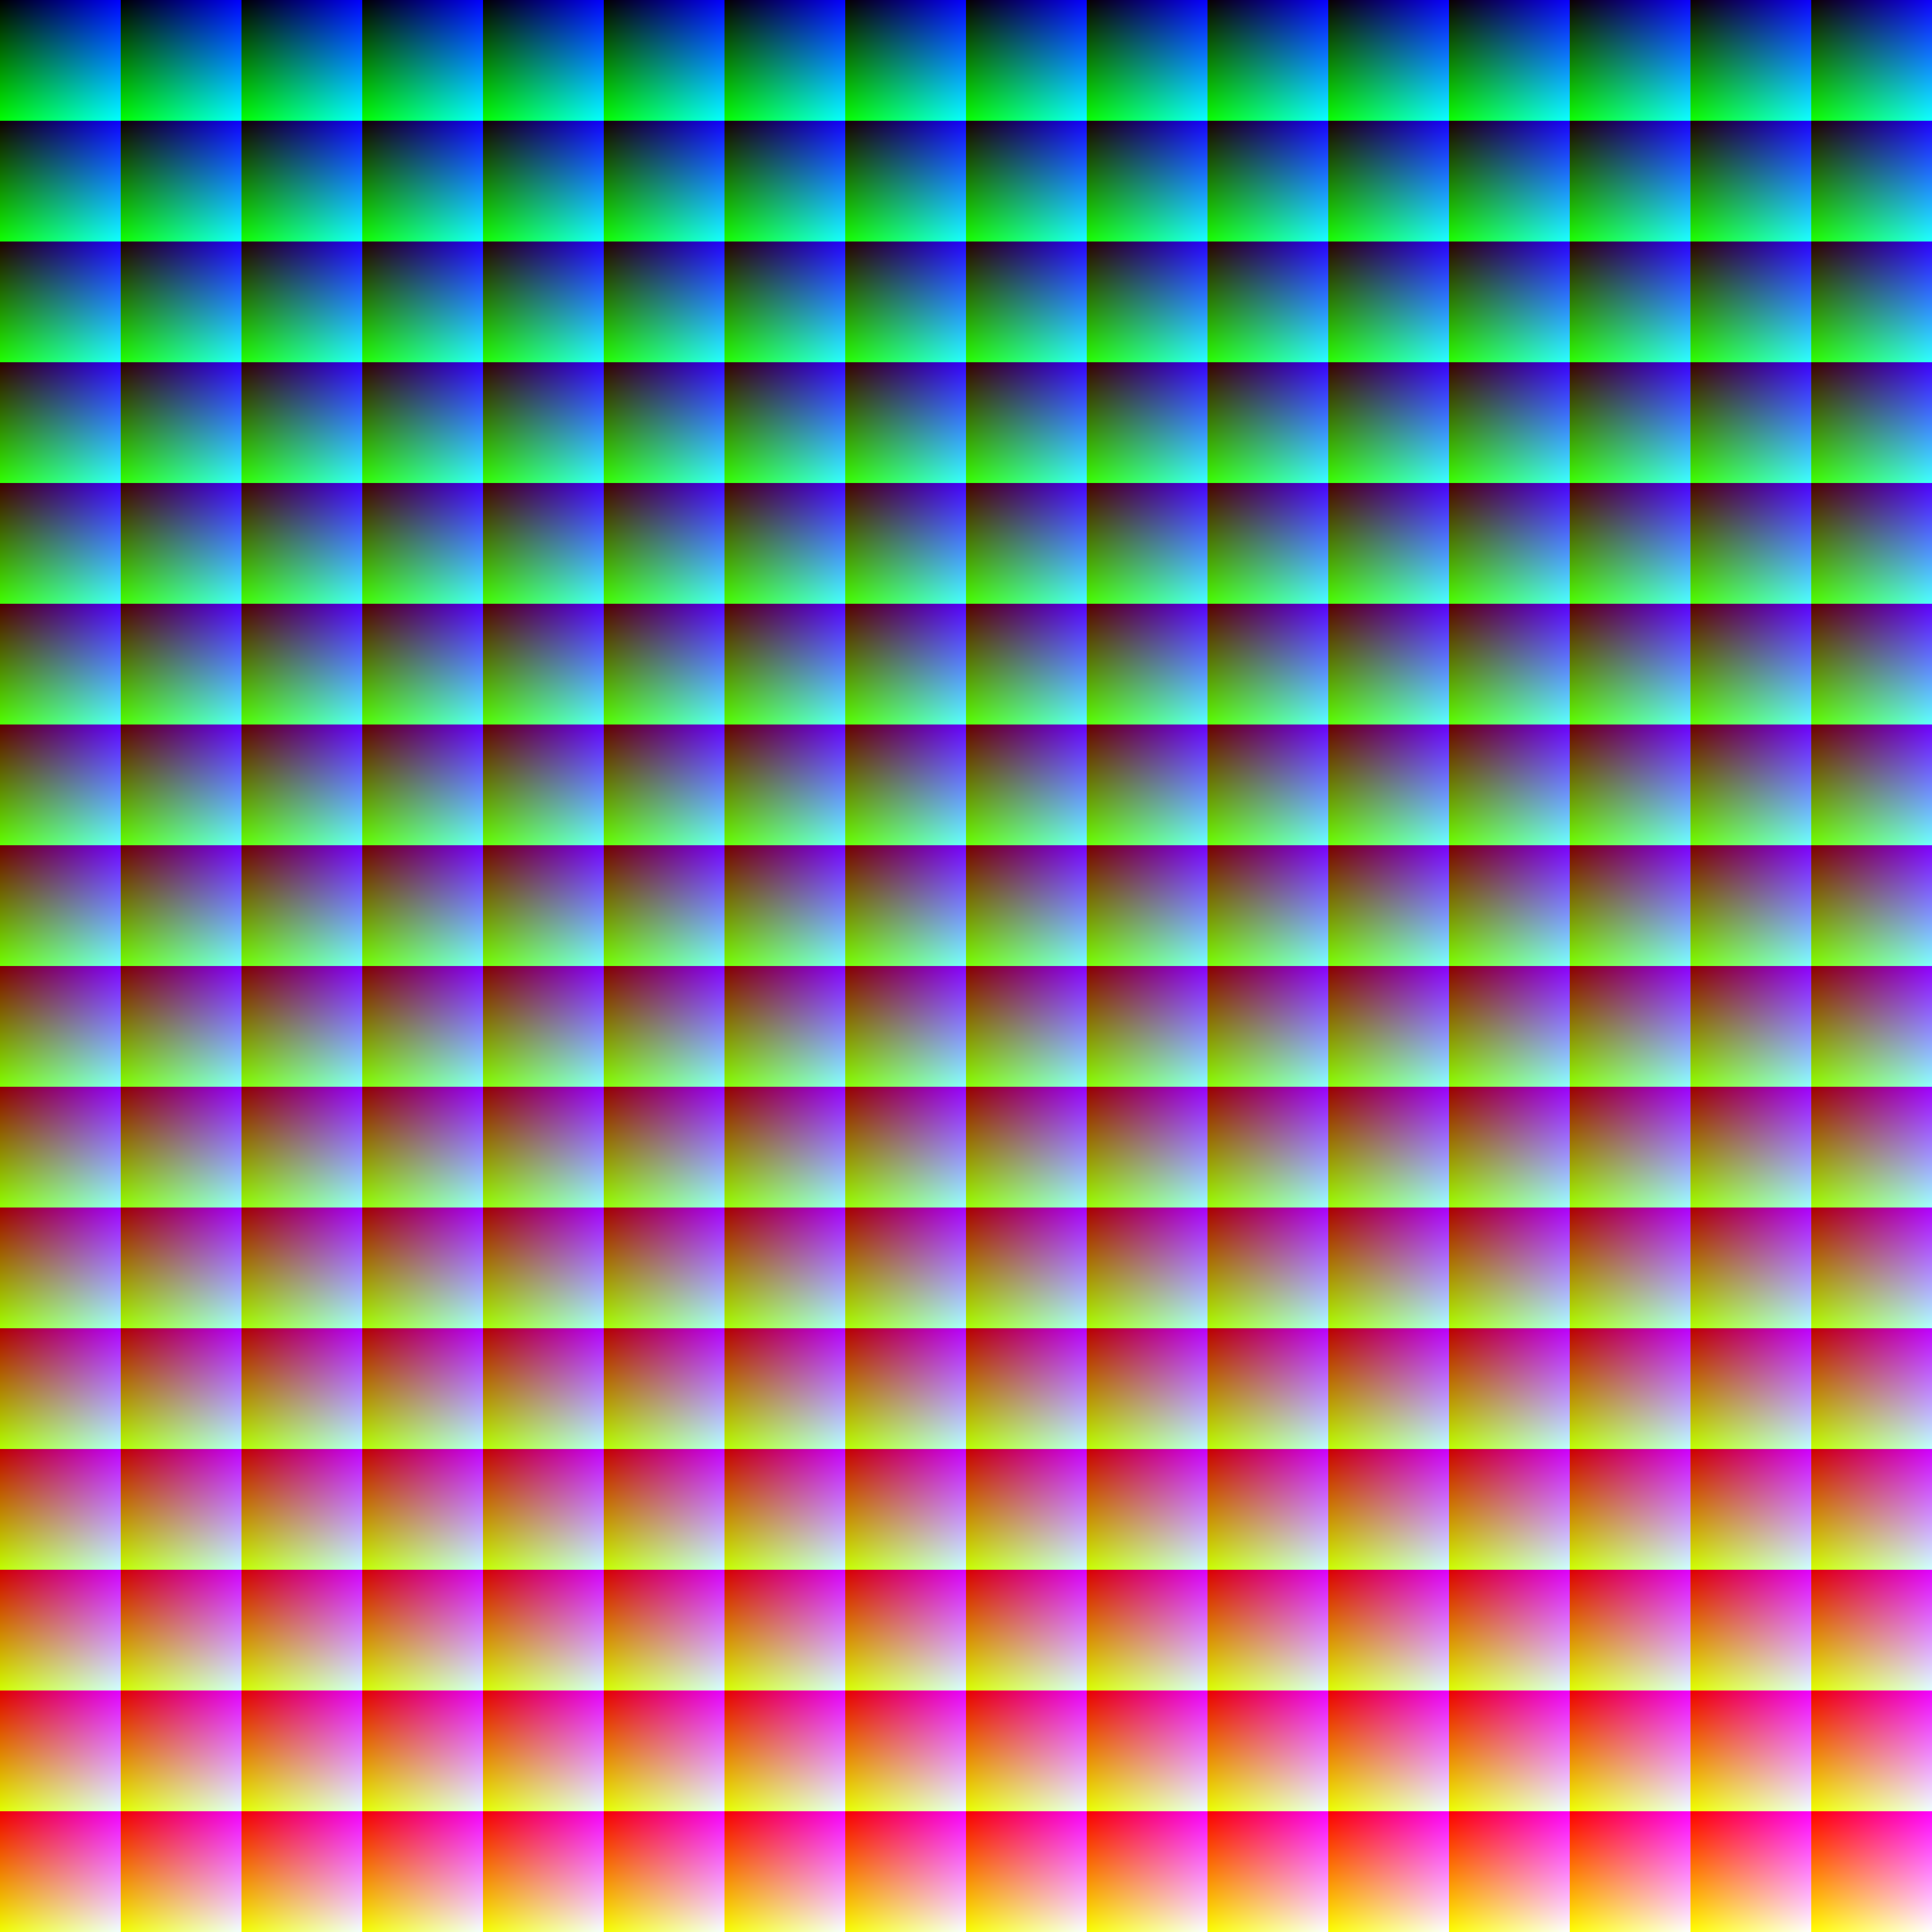 1024 x 1024 пиксель